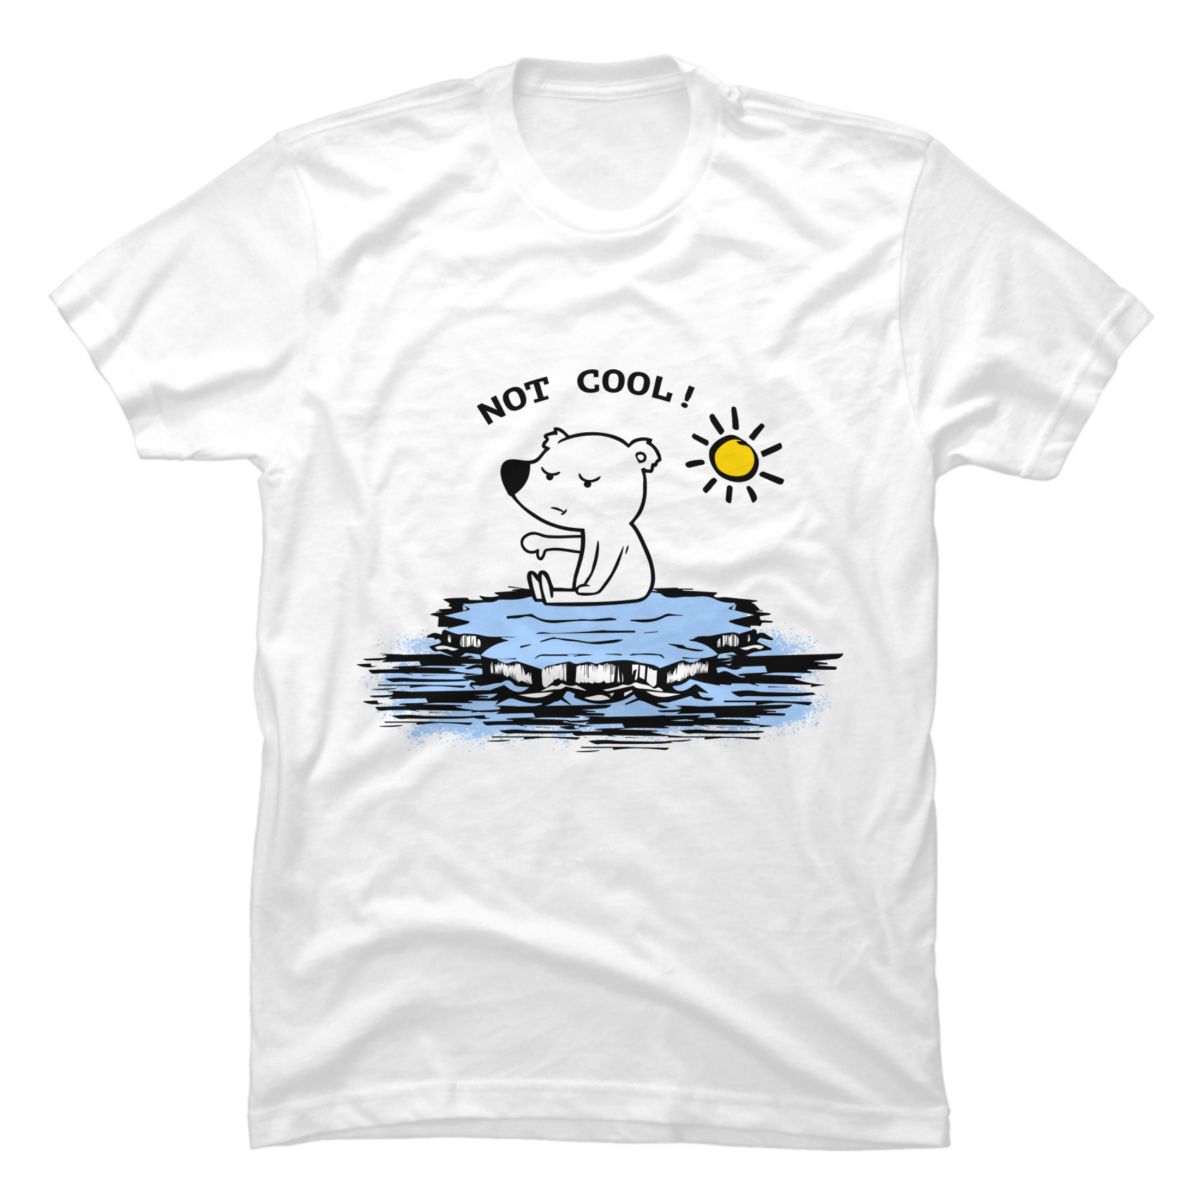 polar bear tee shirts